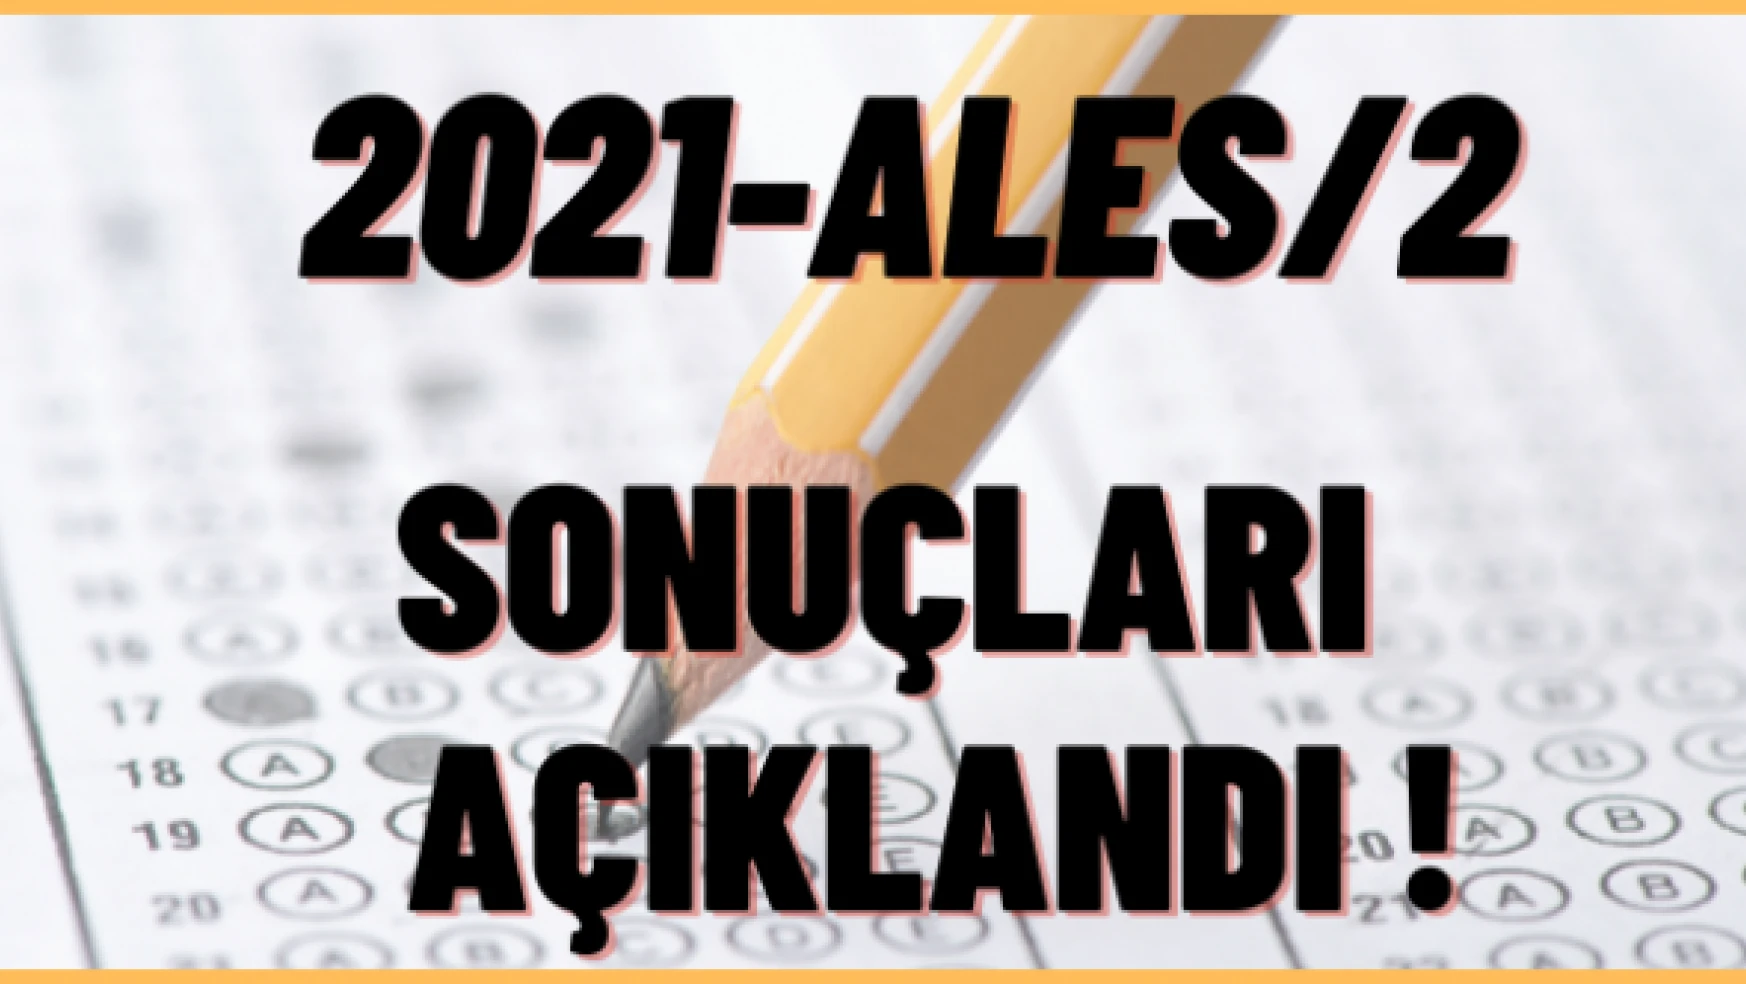 2021-ALES/2 sonuçları açıklandı!